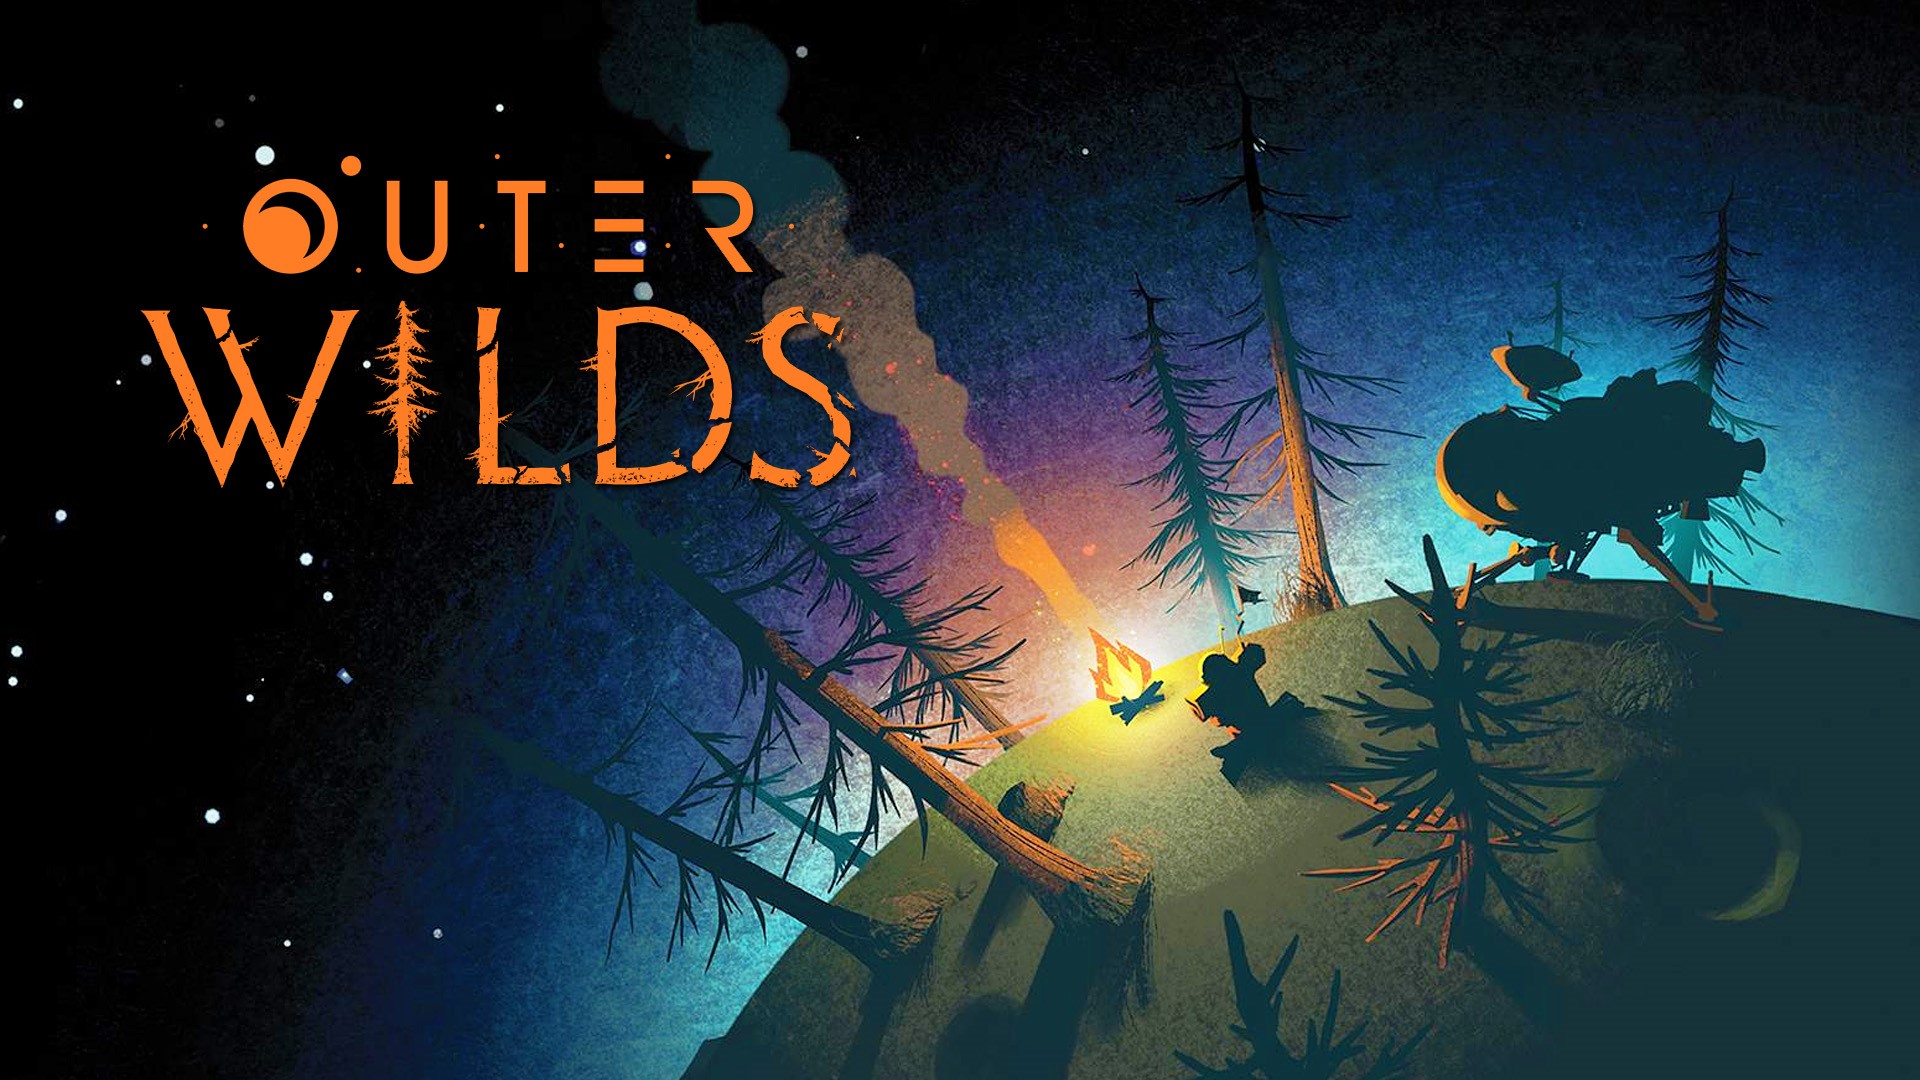 PS5 & Xbox-Upgrades für Outer Wilds jetzt verfügbar Titel